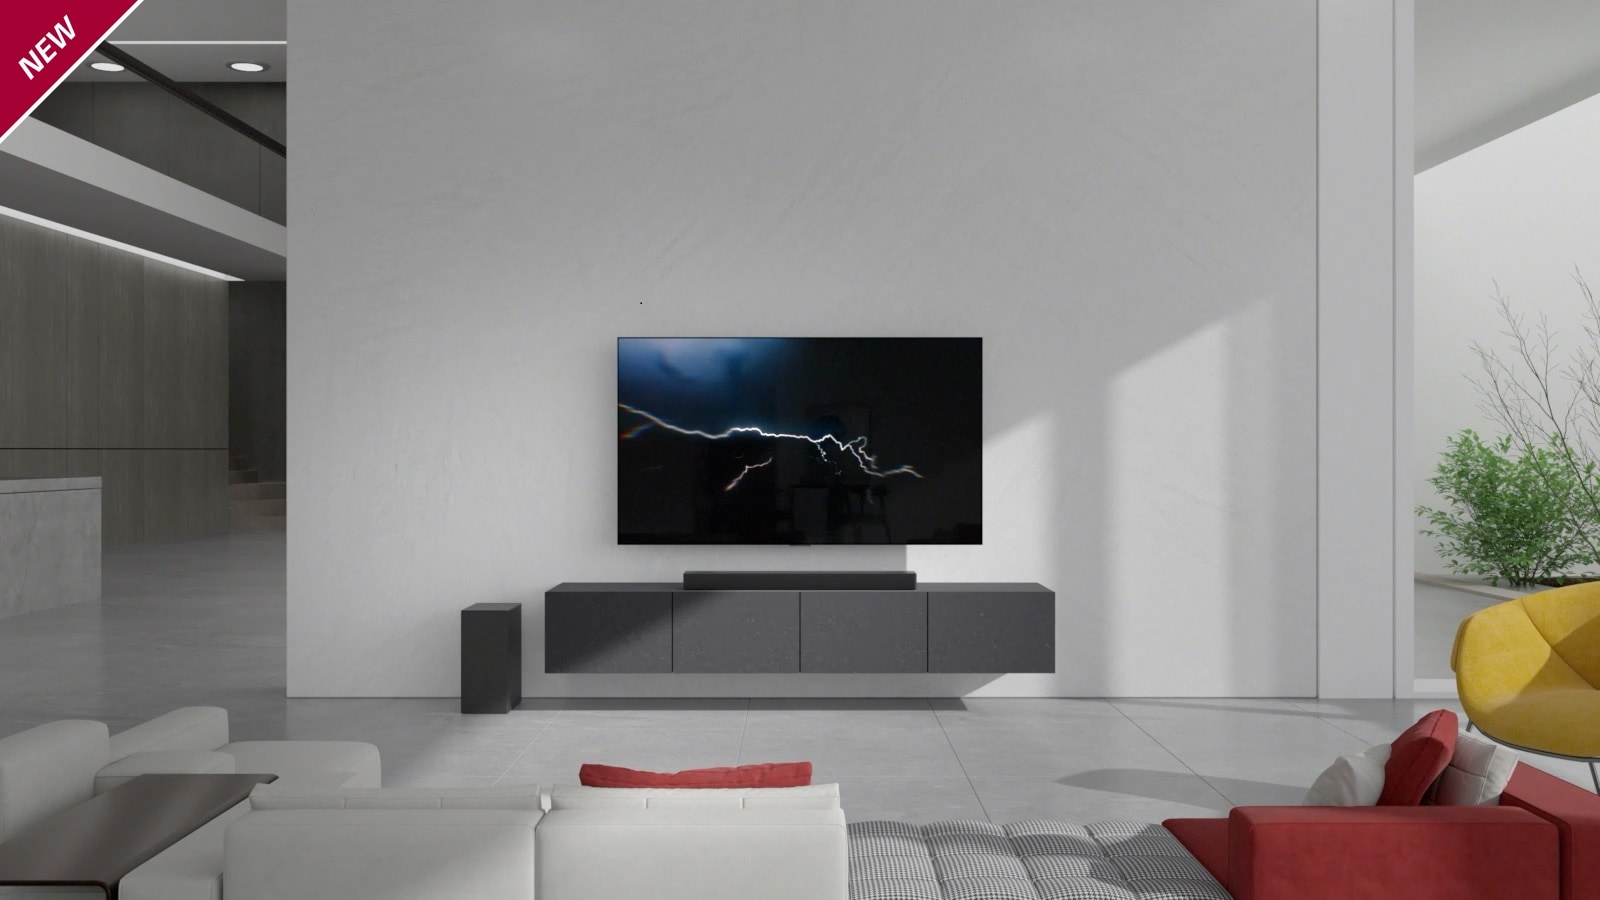 Το sound bar είναι τοποθετημένο σε γκρι ερμάριο, με μια τηλεόραση αναρτημένη στον τοίχο του σαλονιού. Ένα ασύρματο υπογούφερ είναι τοποθετημένο στο πάτωμα στην αριστερή πλευρά και το φως του ήλιου μπαίνει από τη δεξιά πλευρά της εικόνας. Ένας μακρύς καναπές λευκού και κόκκινου χρώματος είναι τοποθετημένος απέναντι από την τηλεόραση και το sound bar. Το σήμα NEW εμφανίζεται στην επάνω αριστερή γωνία.